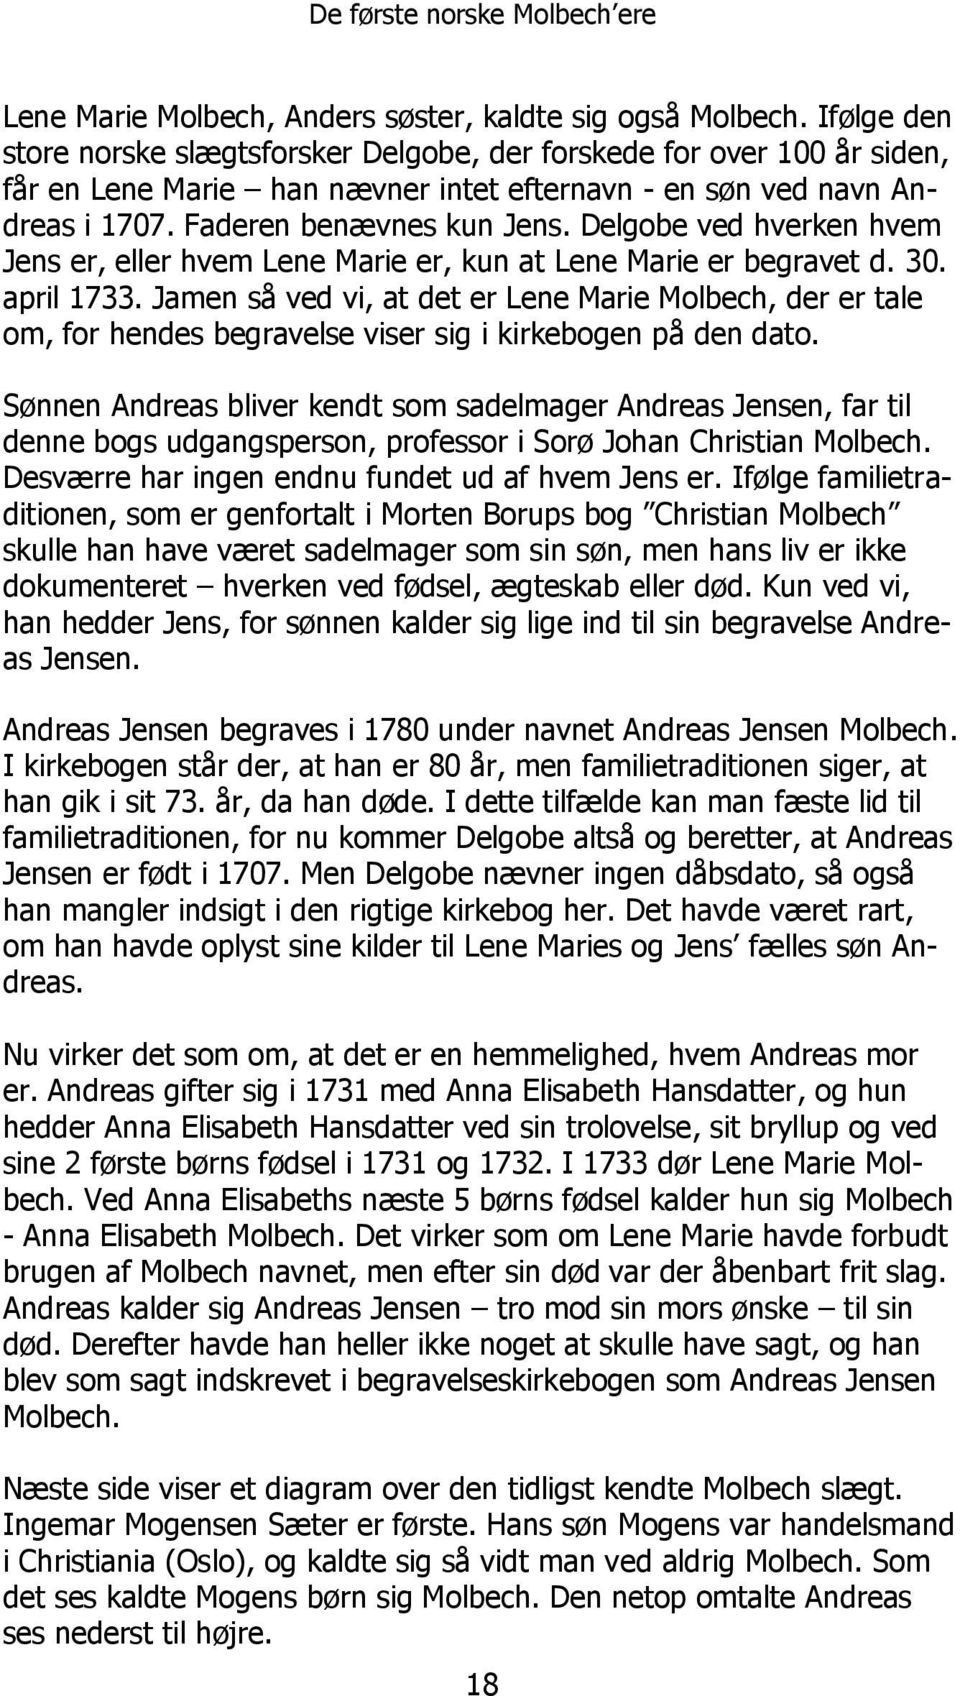 Delgobe ved hverken hvem Jens er, eller hvem Lene Marie er, kun at Lene Marie er begravet d. 30. april 1733.